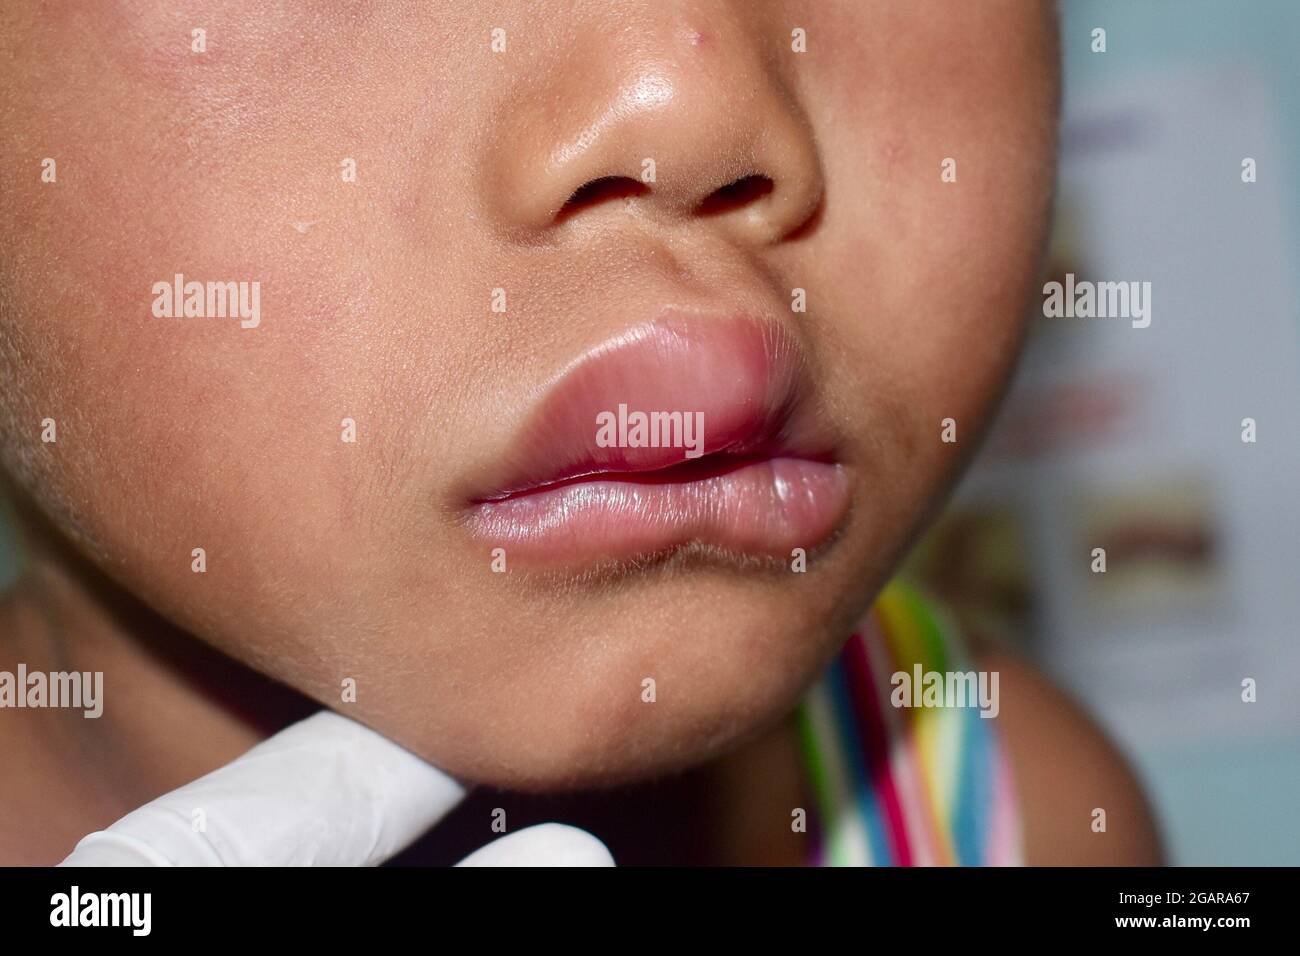 Œdème de Quincke sur les lèvres de l'enfant mâle d'Asie du Sud-est. Enfant édémateux. Causée par une allergie aux médicaments, aux fruits de mer ou aux produits chimiques et par des piqûres d'insectes. Vue latérale. Banque D'Images